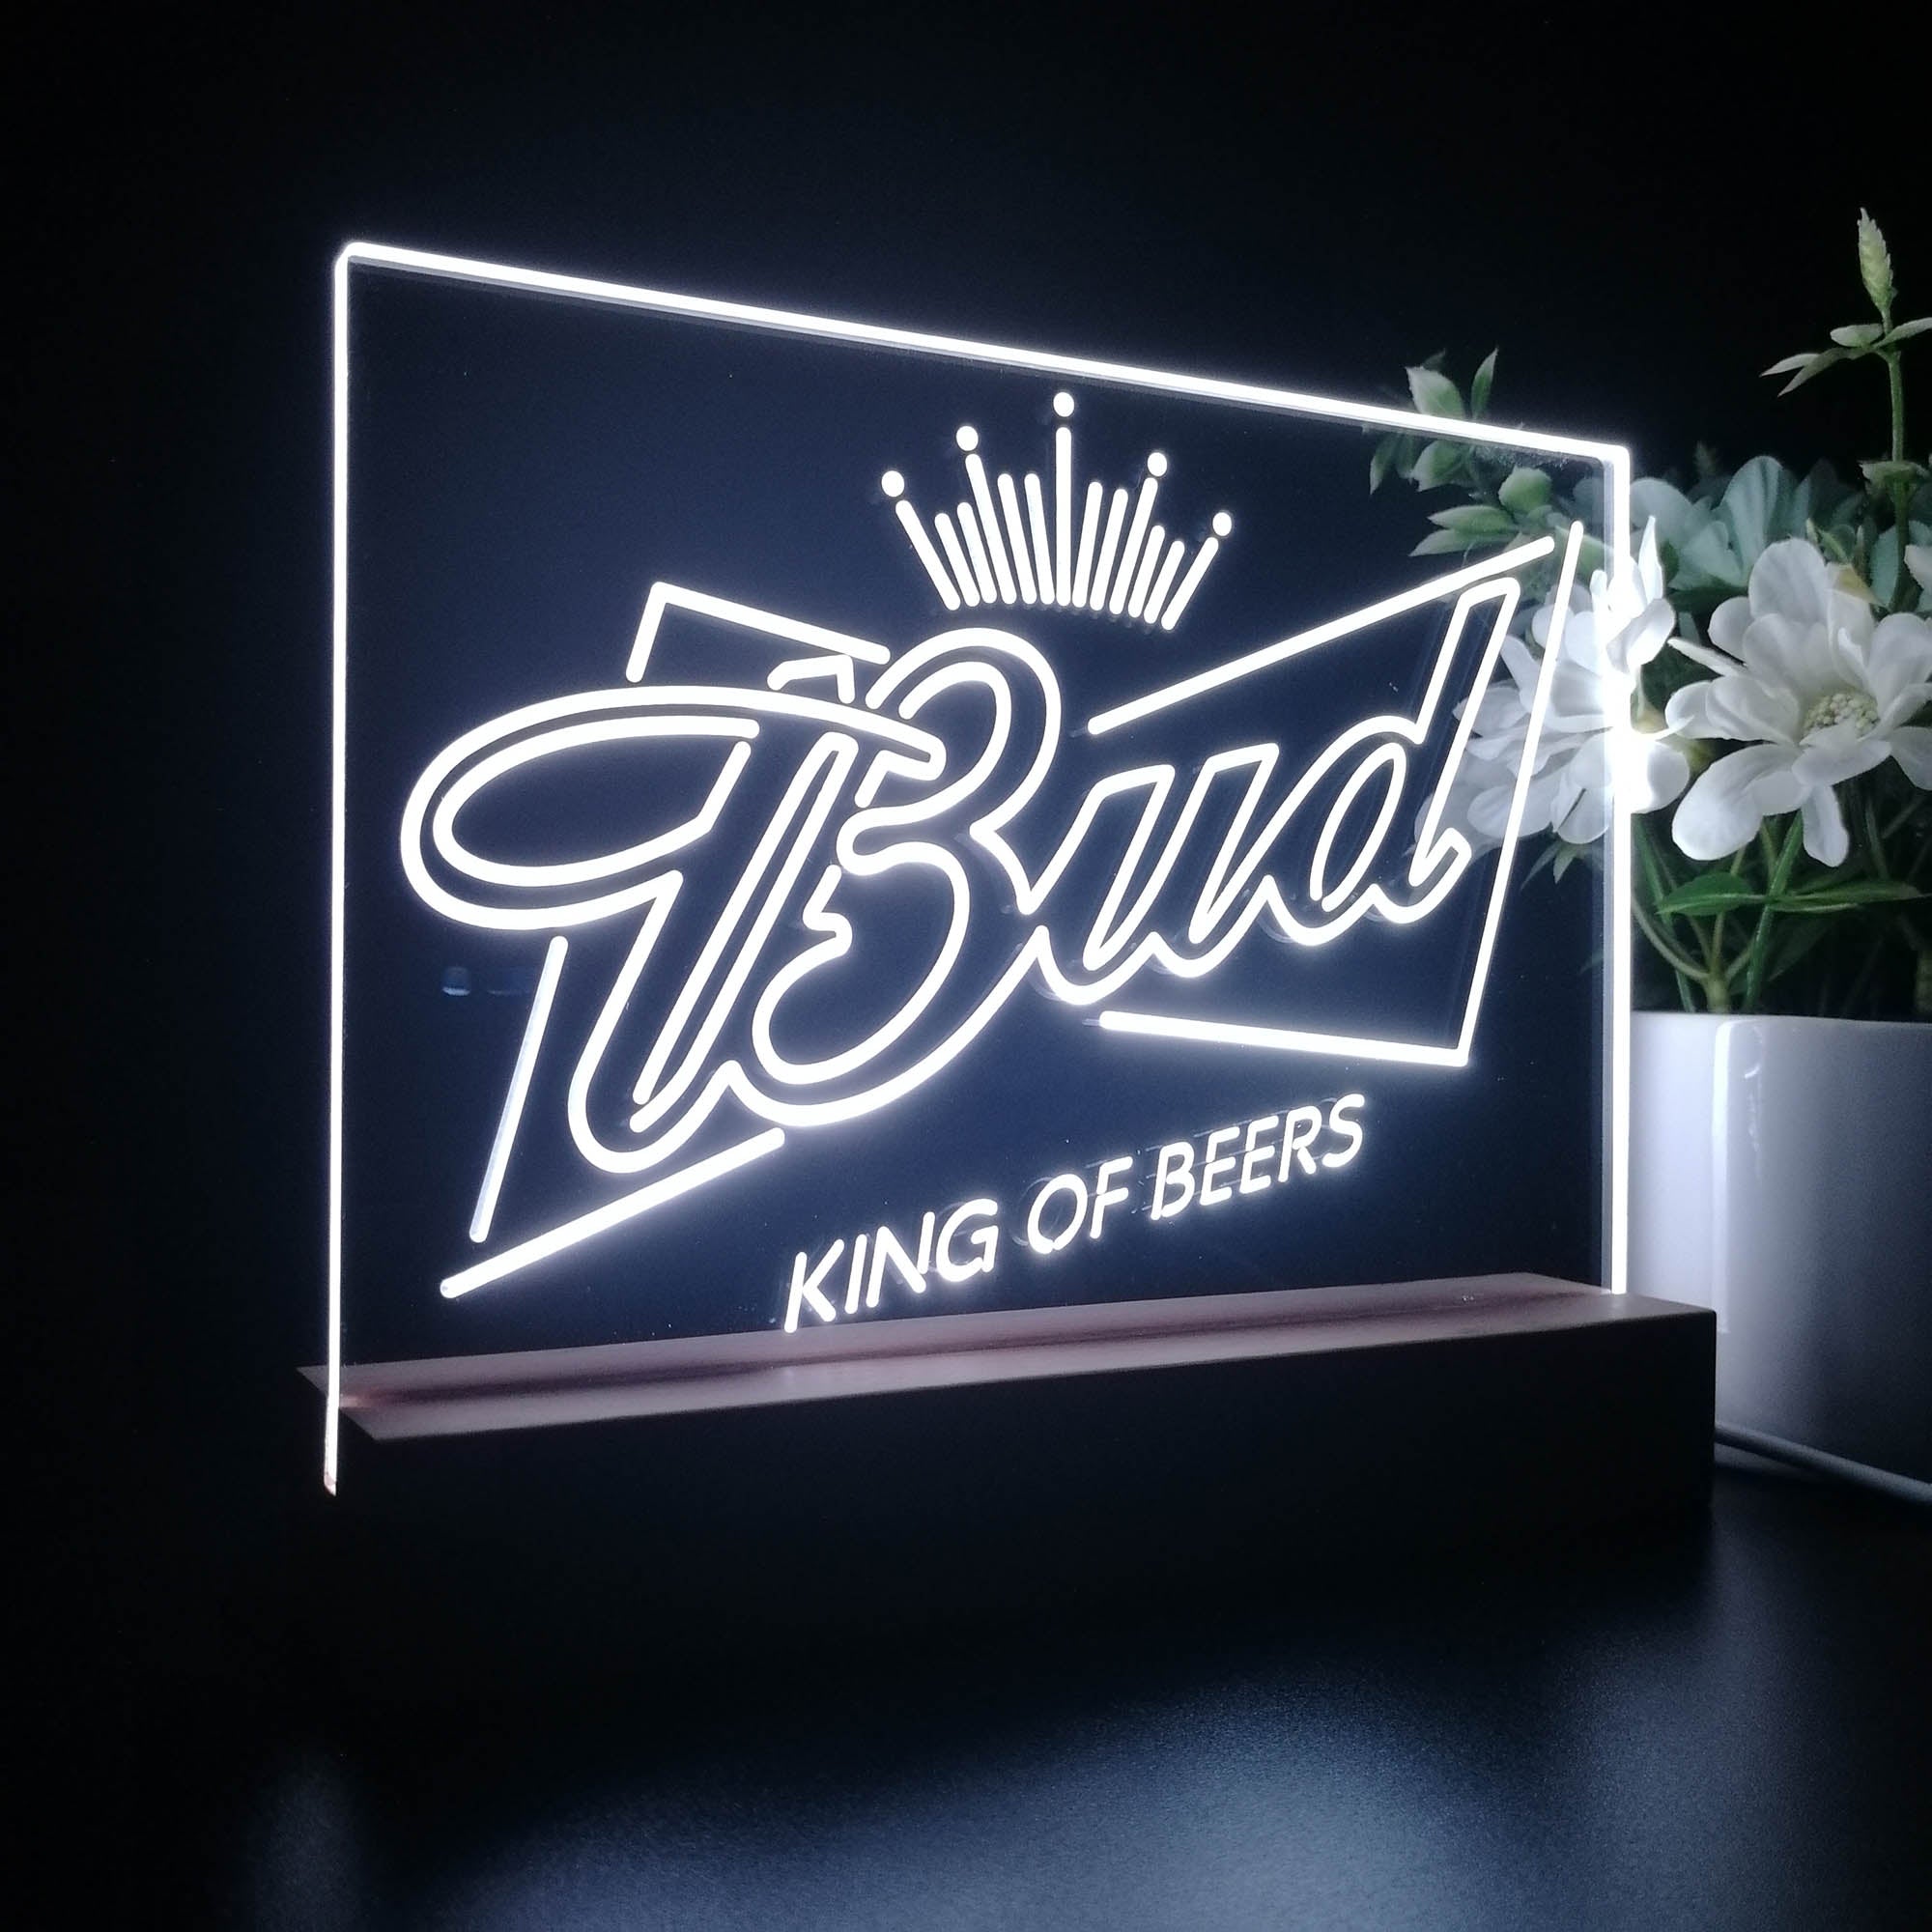 Bud King of Beer Crown Neon Sign Pub Bar Lamp